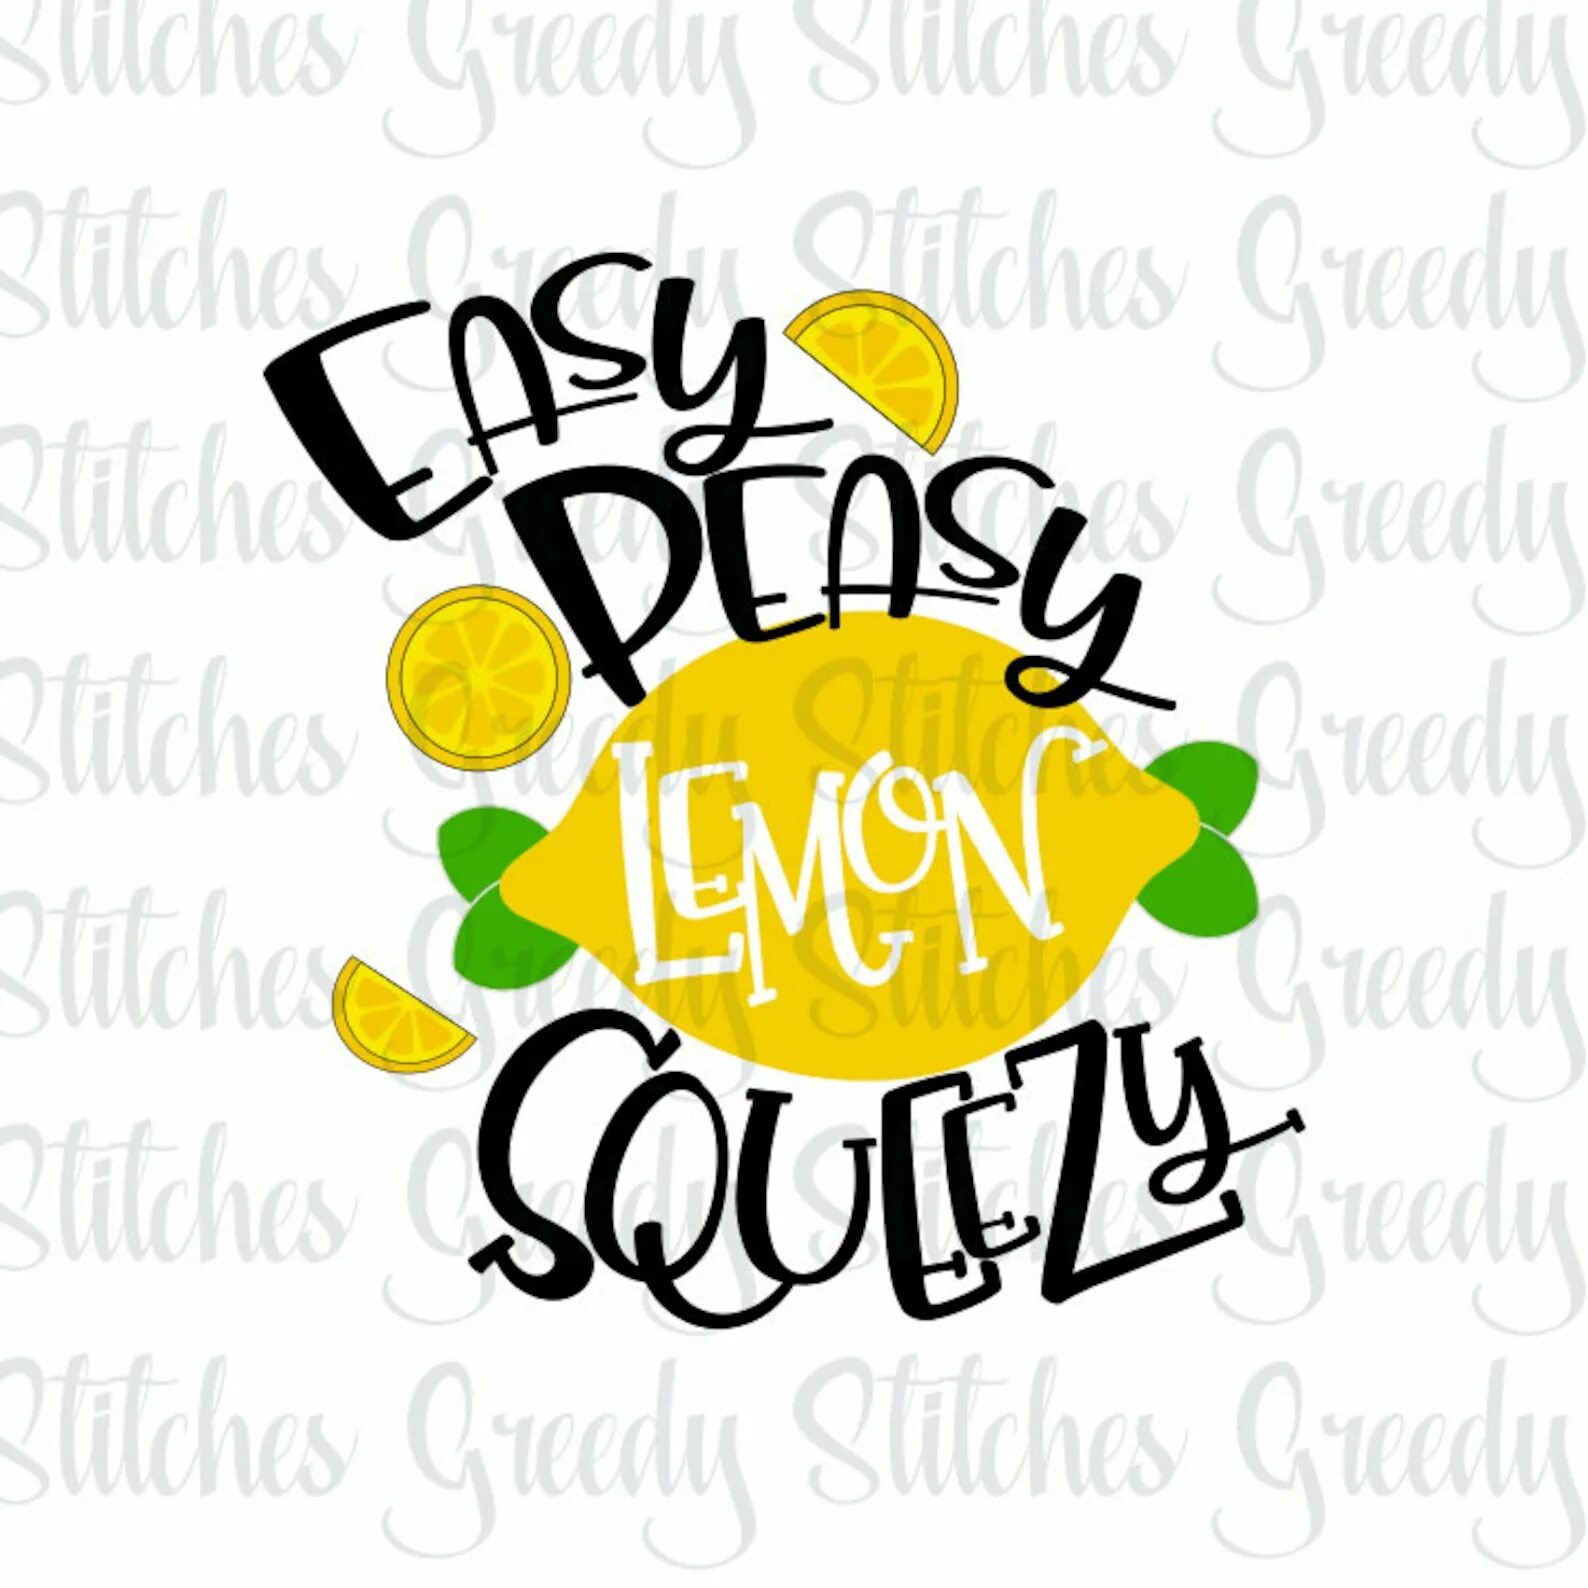 Peasy Lemon Squeezy. Easy Peasy. ИЗИ пищи Лаймон сквизи. Перевести easy Peasy Lemon Squeezy. Easy squeezy